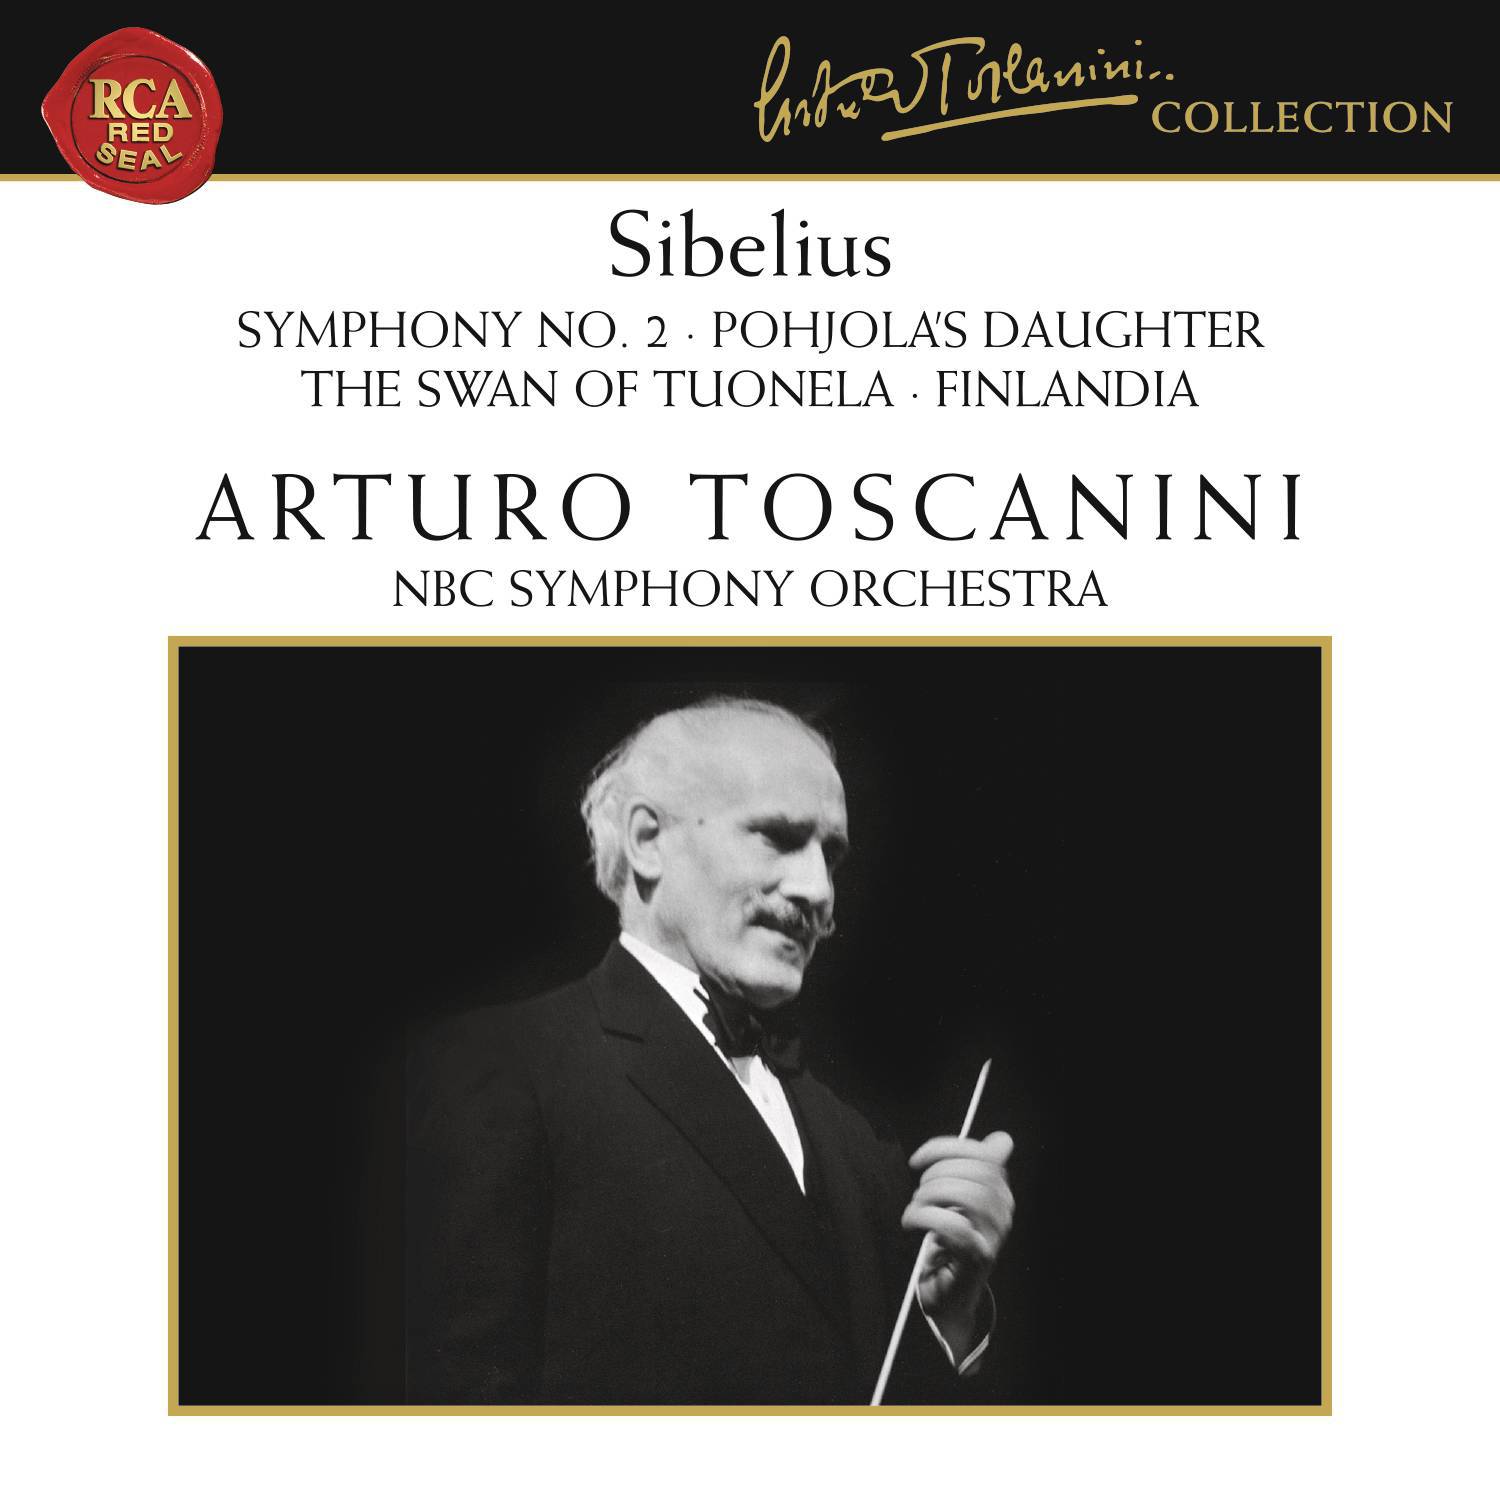 Sibelius: Symphony No. 2 in D Major, Op. 43, Pohjola's Daughter, The Swan of Tuonela & Finlandia